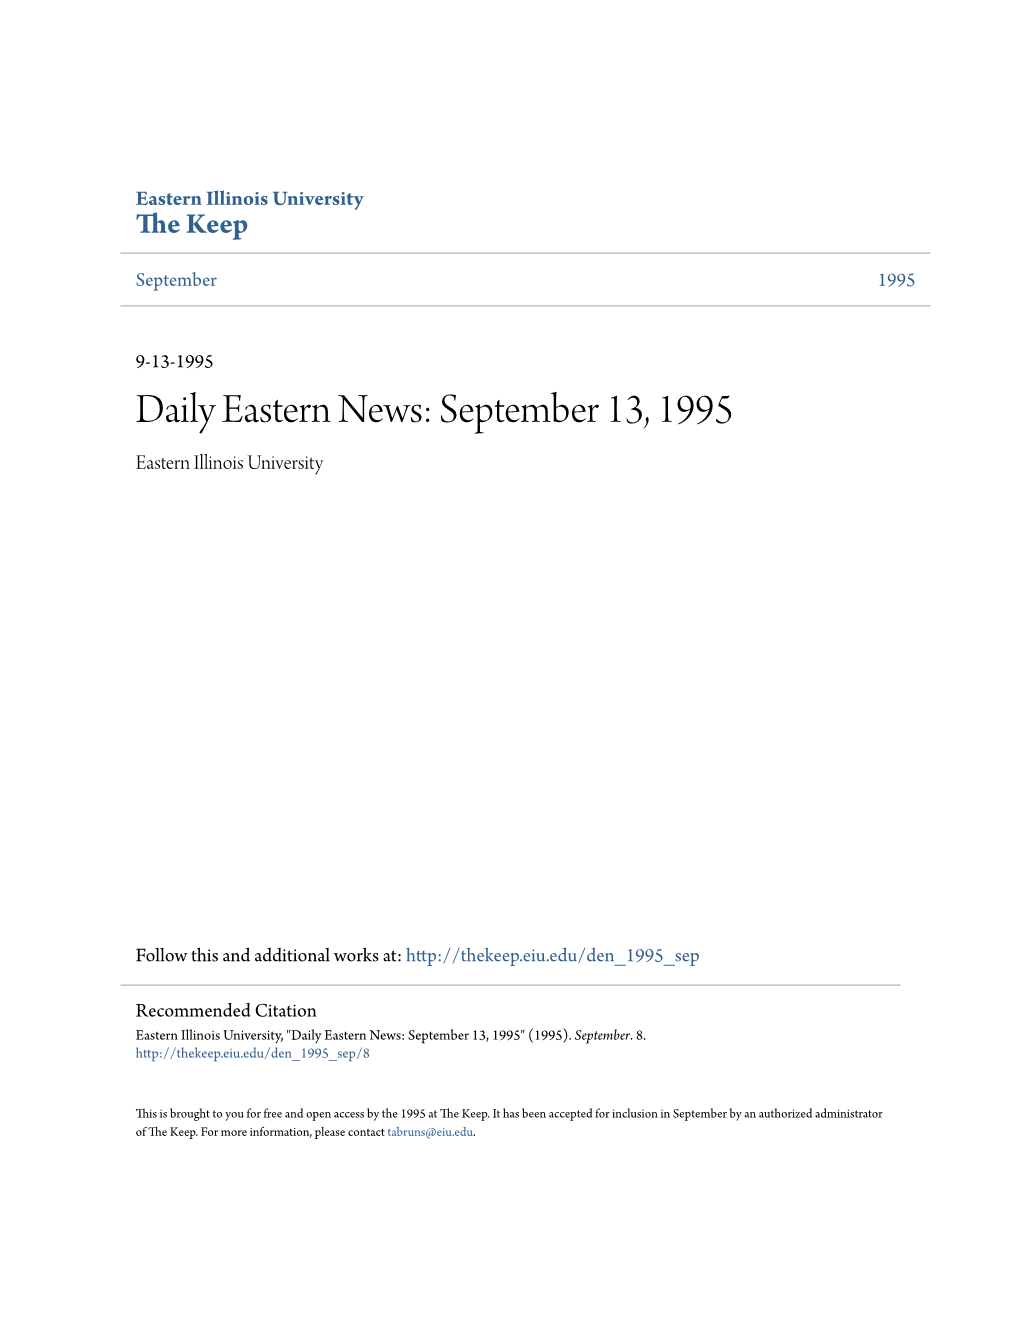 Daily Eastern News: September 13, 1995 Eastern Illinois University